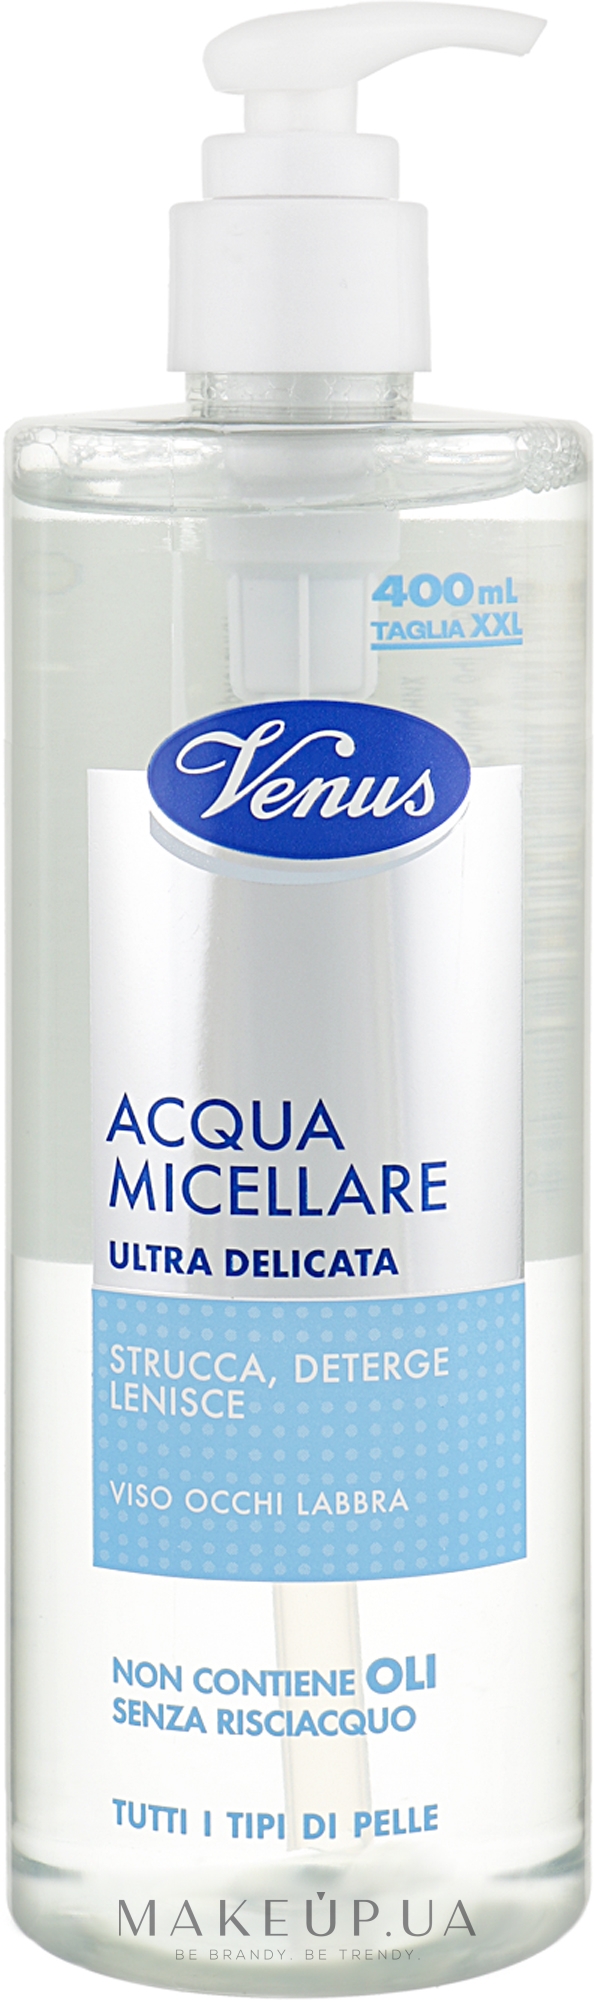 Ультра деликатная мицеллярная вода - Venus Acqua Micellare Ultra Delicata  — фото 400ml